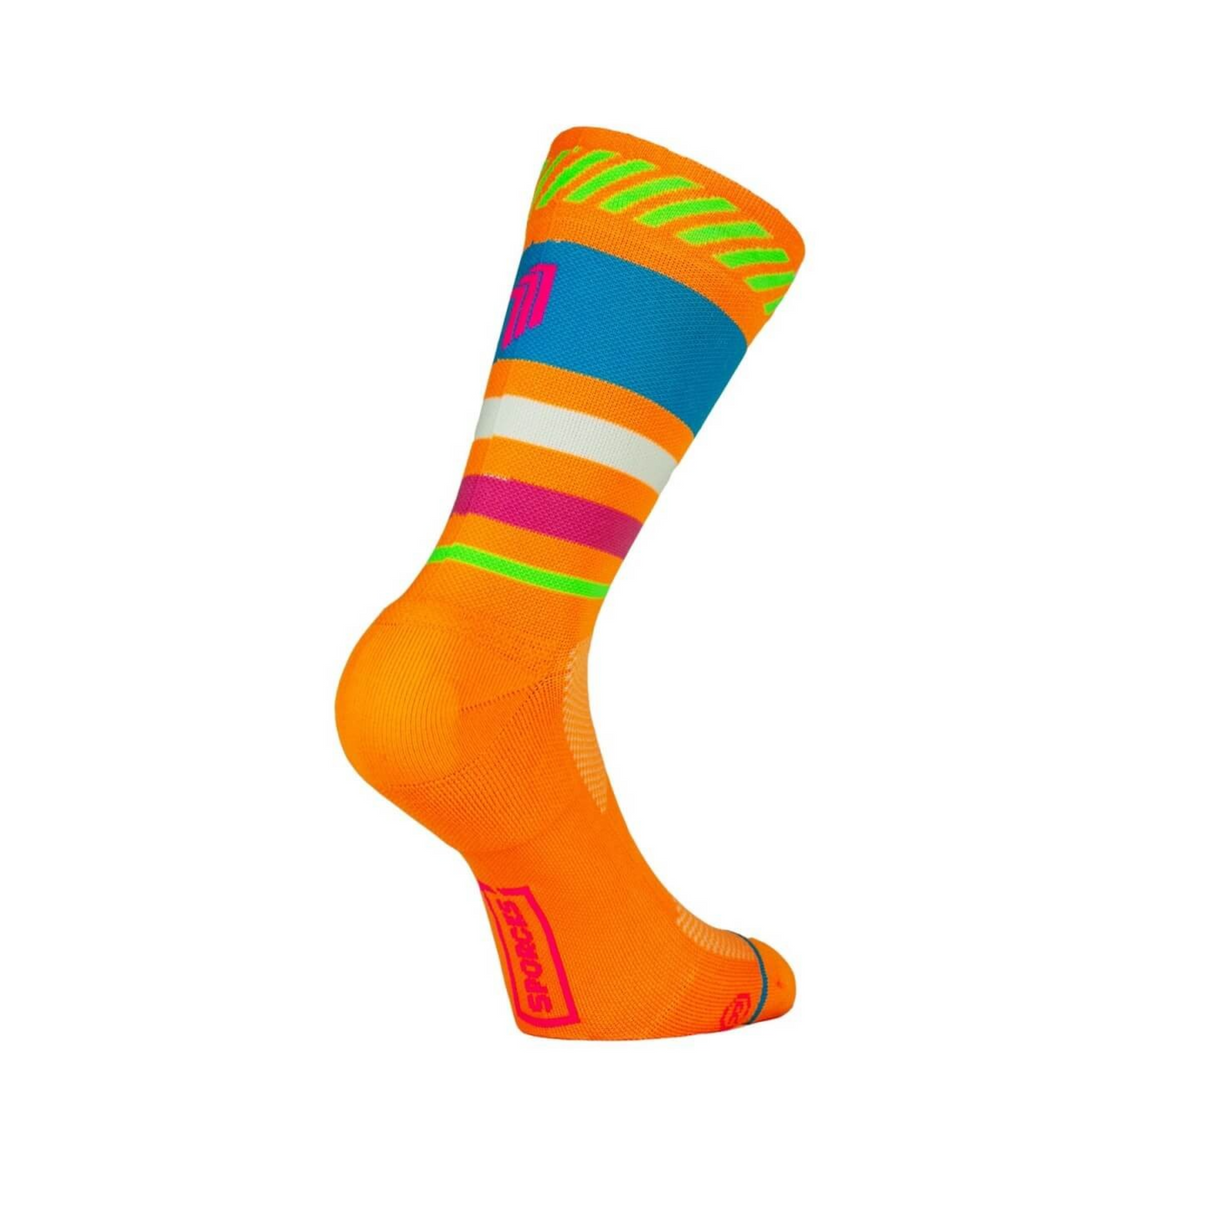 Sporcks Lima Limón - Running Socks